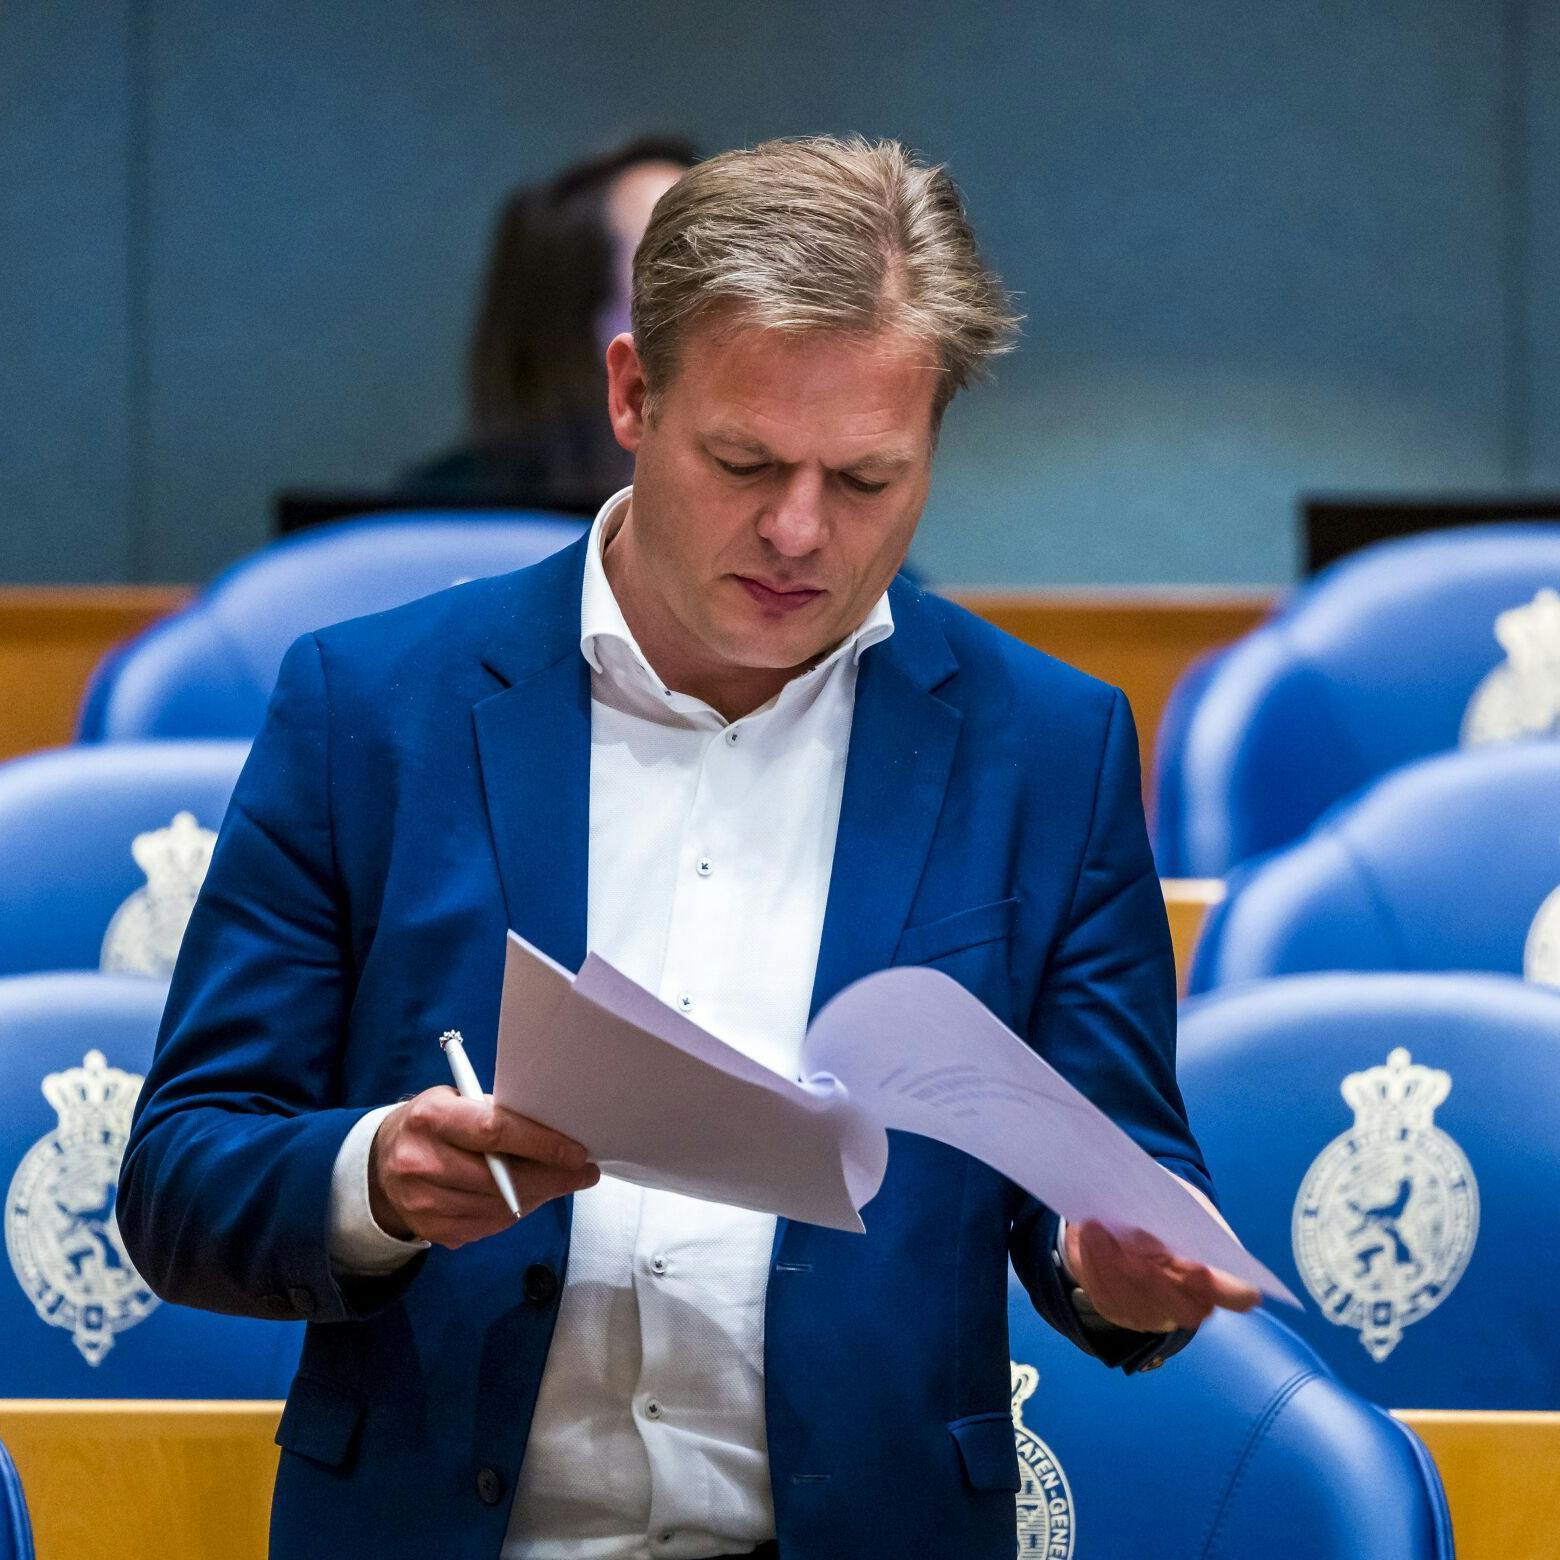 Pieter Omtzigt stelt Kamervragen over klokkenluider NPO